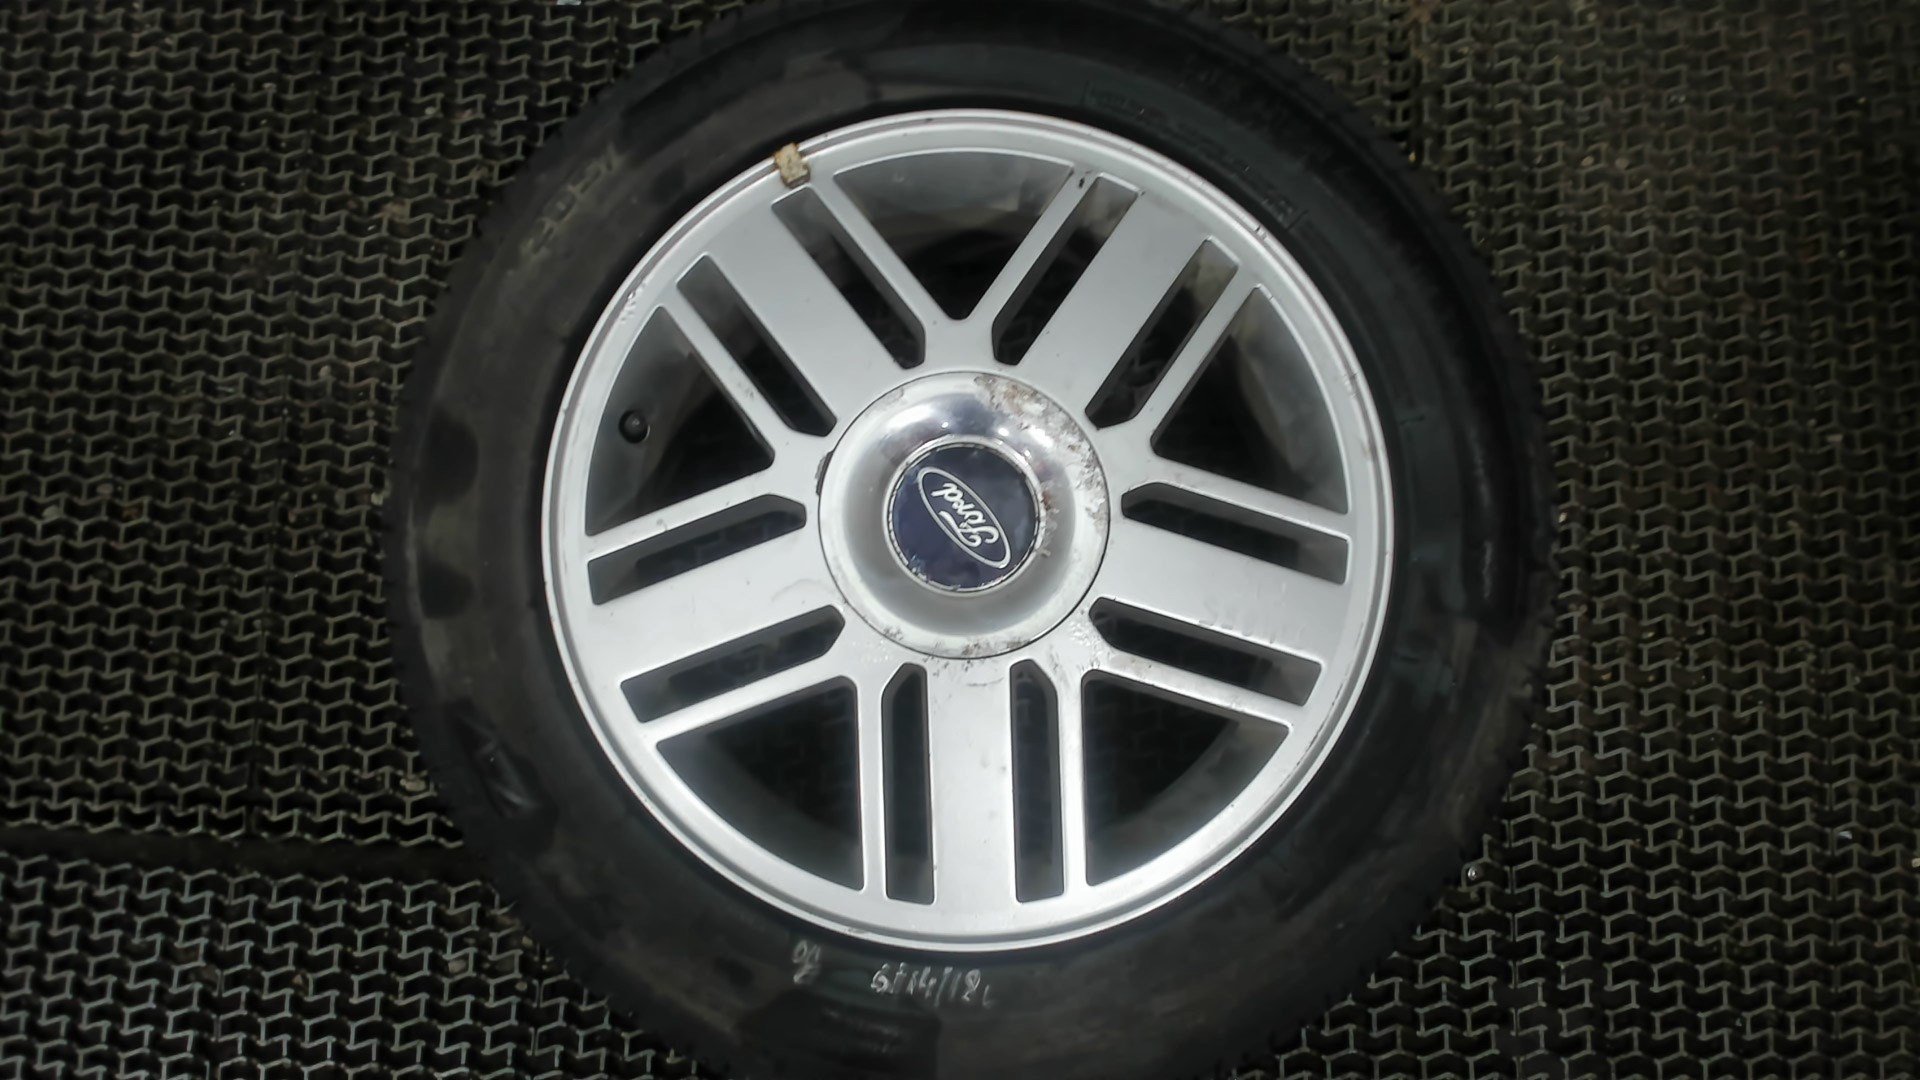 Размер литых дисков форд фокус 2. Диск Форд фокус 2 оригинал 16. Колеса Форд фокус 2 r16. Диск колеса Форд фокус 2. Диск колеса Форд r16.